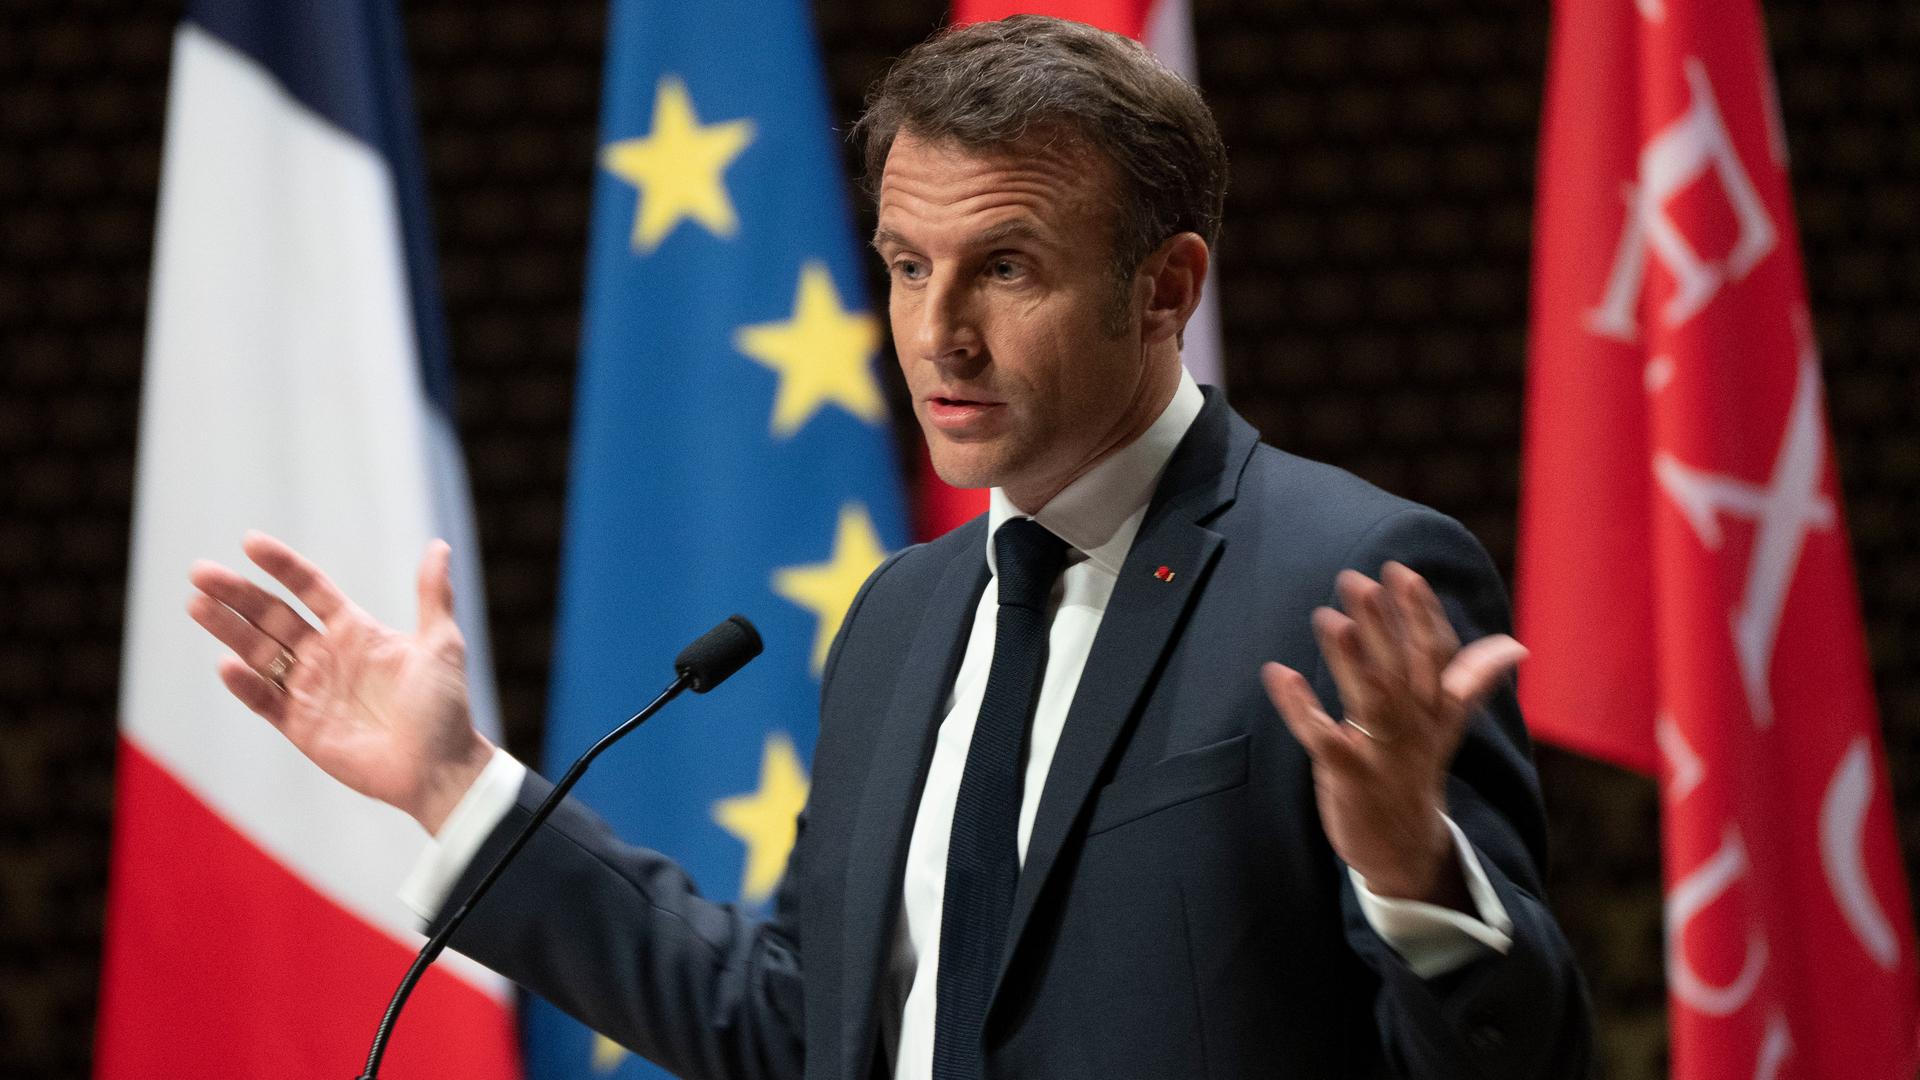 Frankreichs Präsident Macron spricht in einem Theater in Den Haag. Hinter ihm hängen vier verschiedenen Fahnen, darunter die der EU.